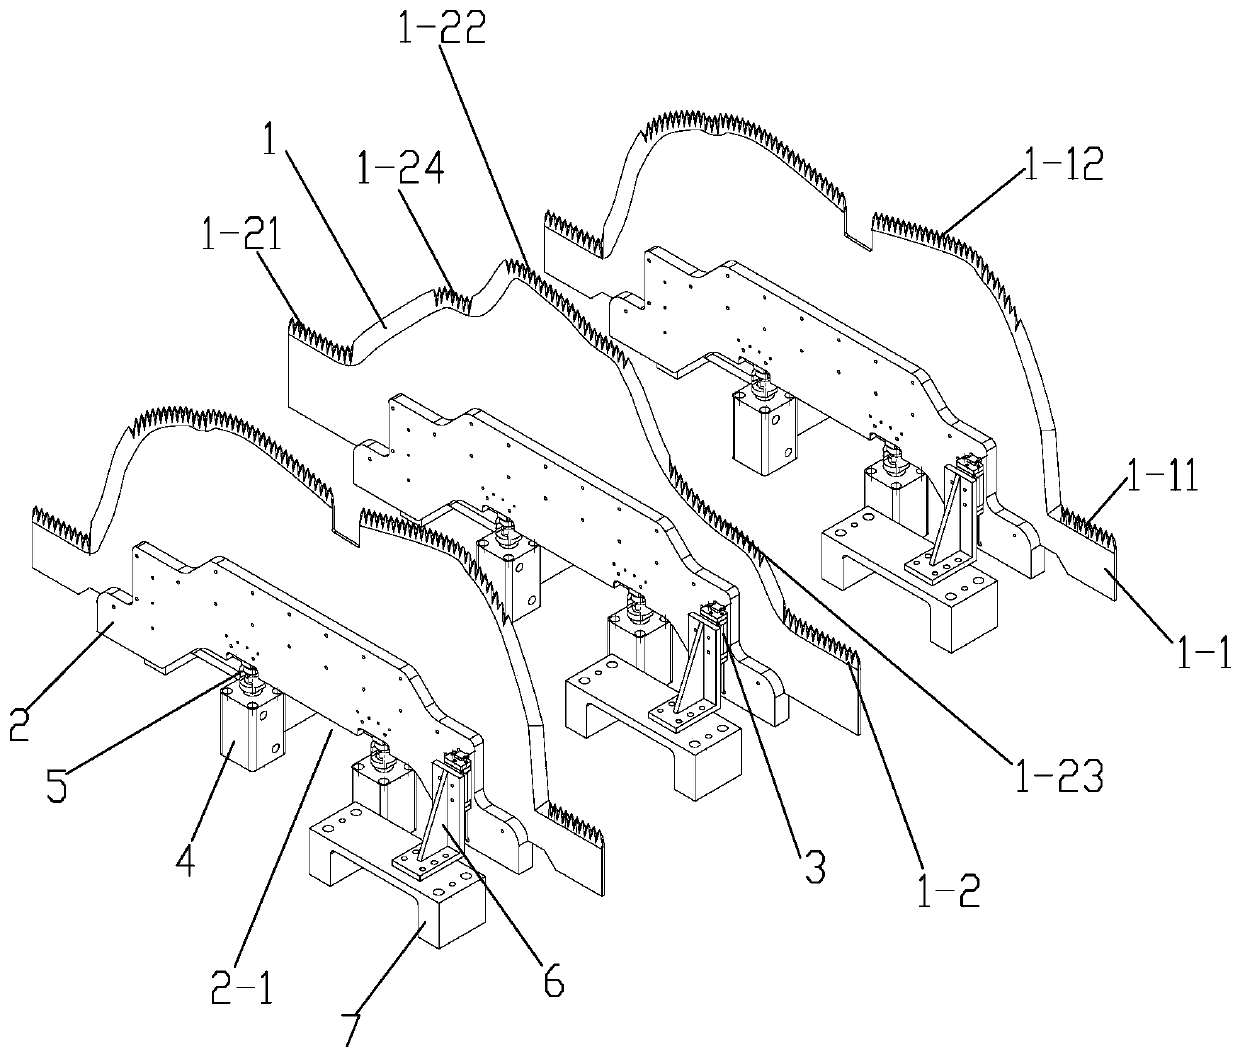 Die cutter mechanism for automotive acoustic parts